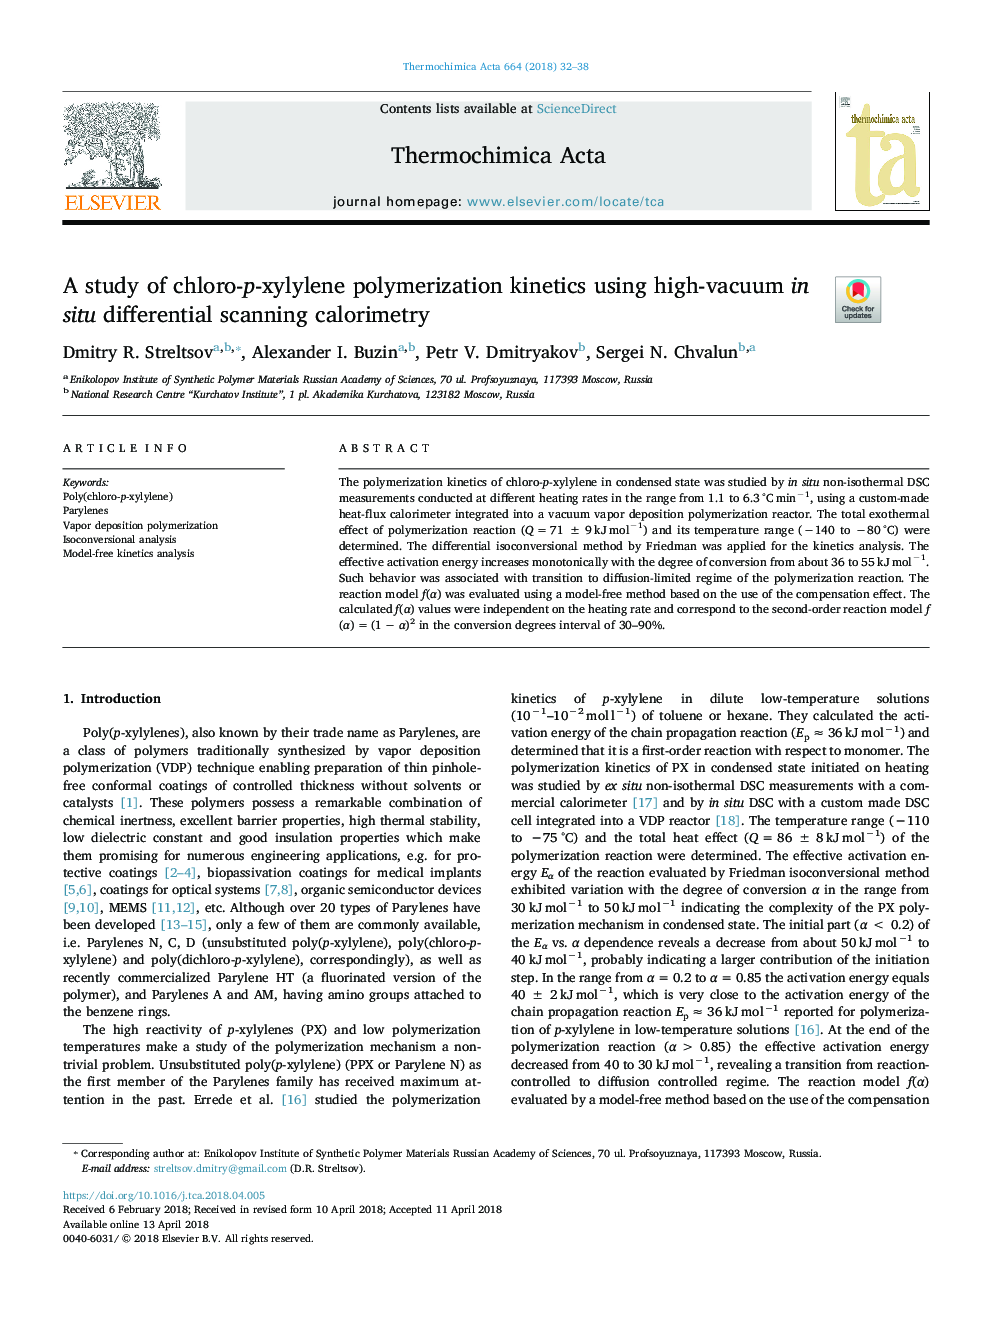 مطالعه سینتیک پلیمریزاسیون کلروپسیلیلن با استفاده از کالری سنجی دیفرانسیل اسکن باالی خلاء در محل 